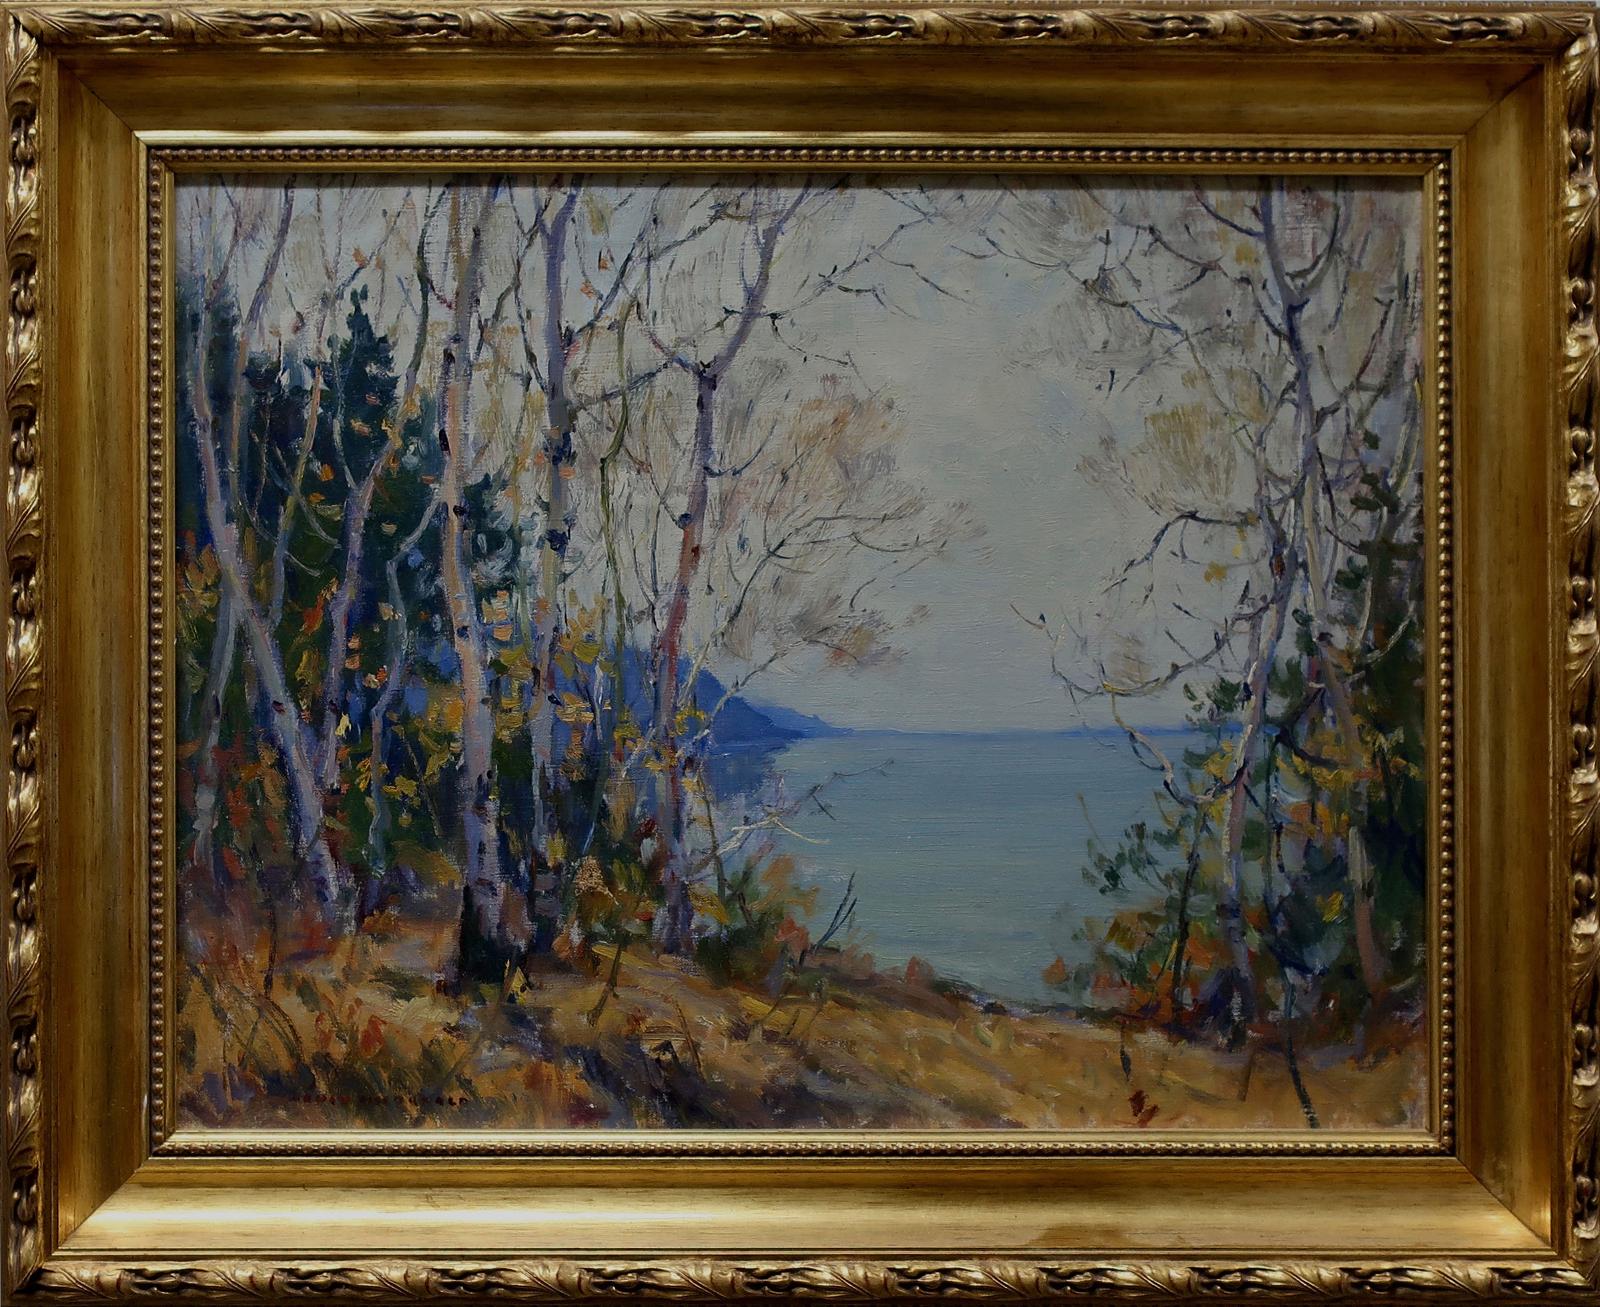 Manly Edward MacDonald (1889-1971) - Evening Fall Lake Study